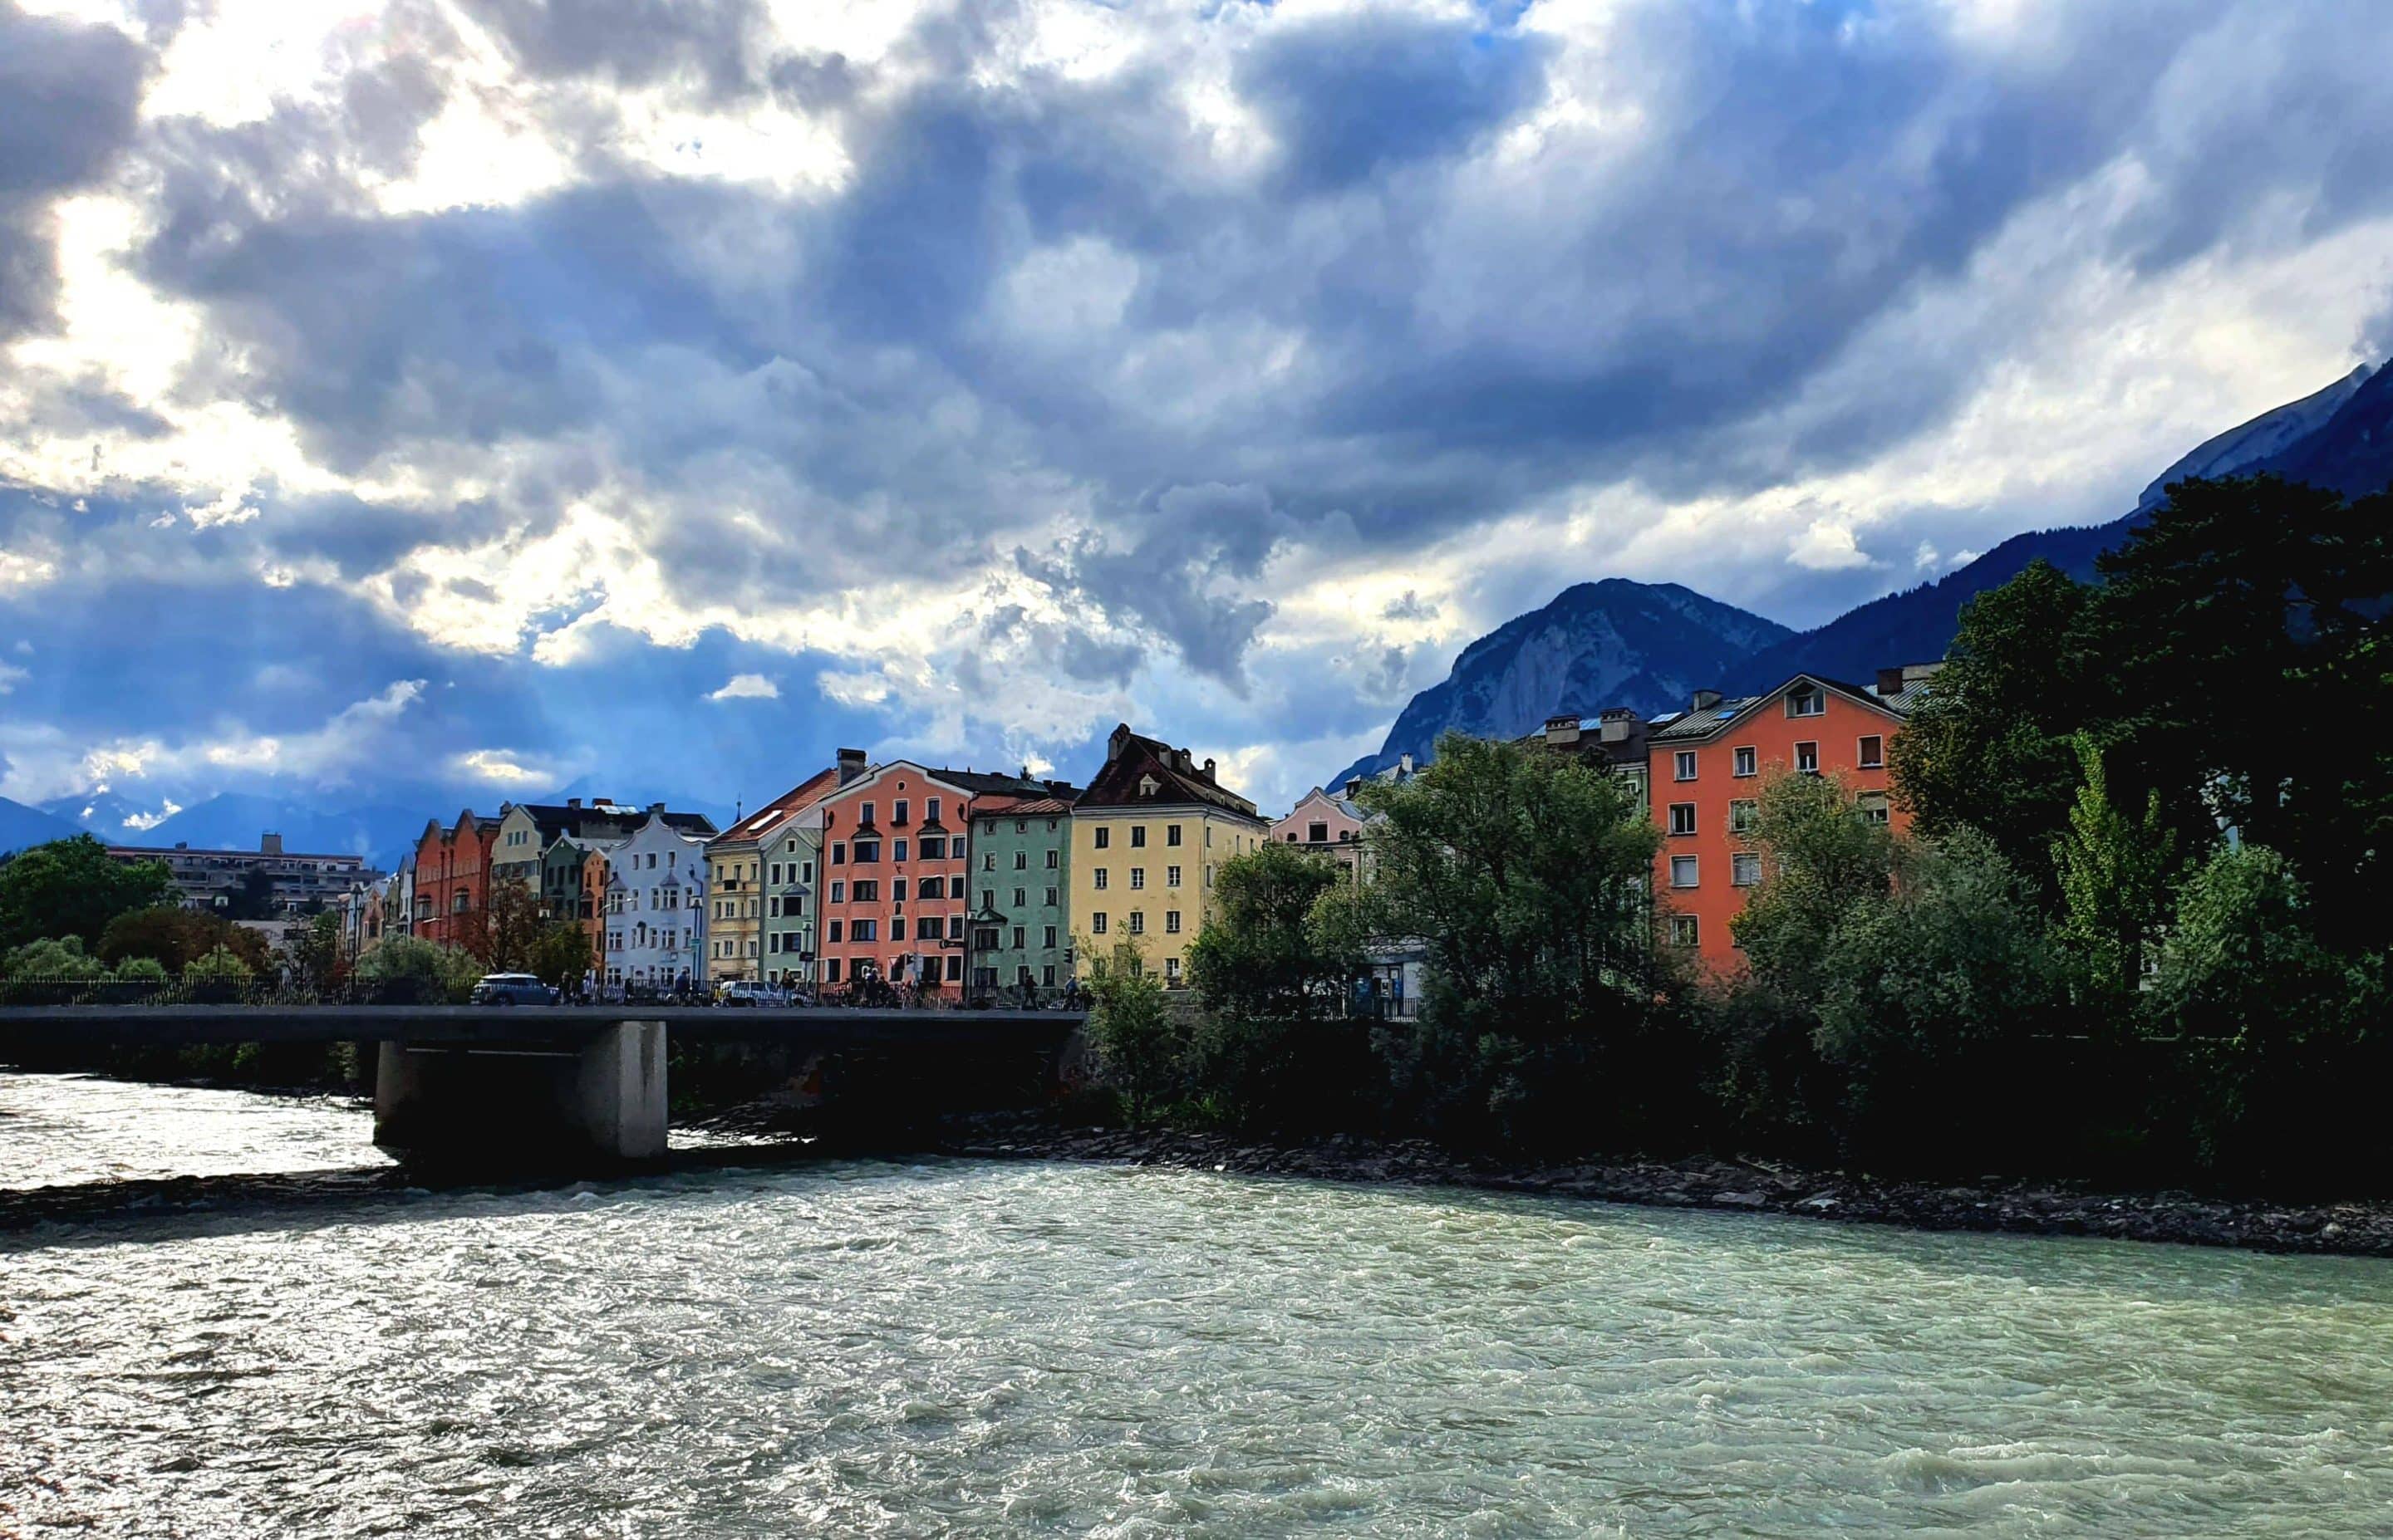 Bezienswaardigheden in Innsbruck - gekleurde huisjes